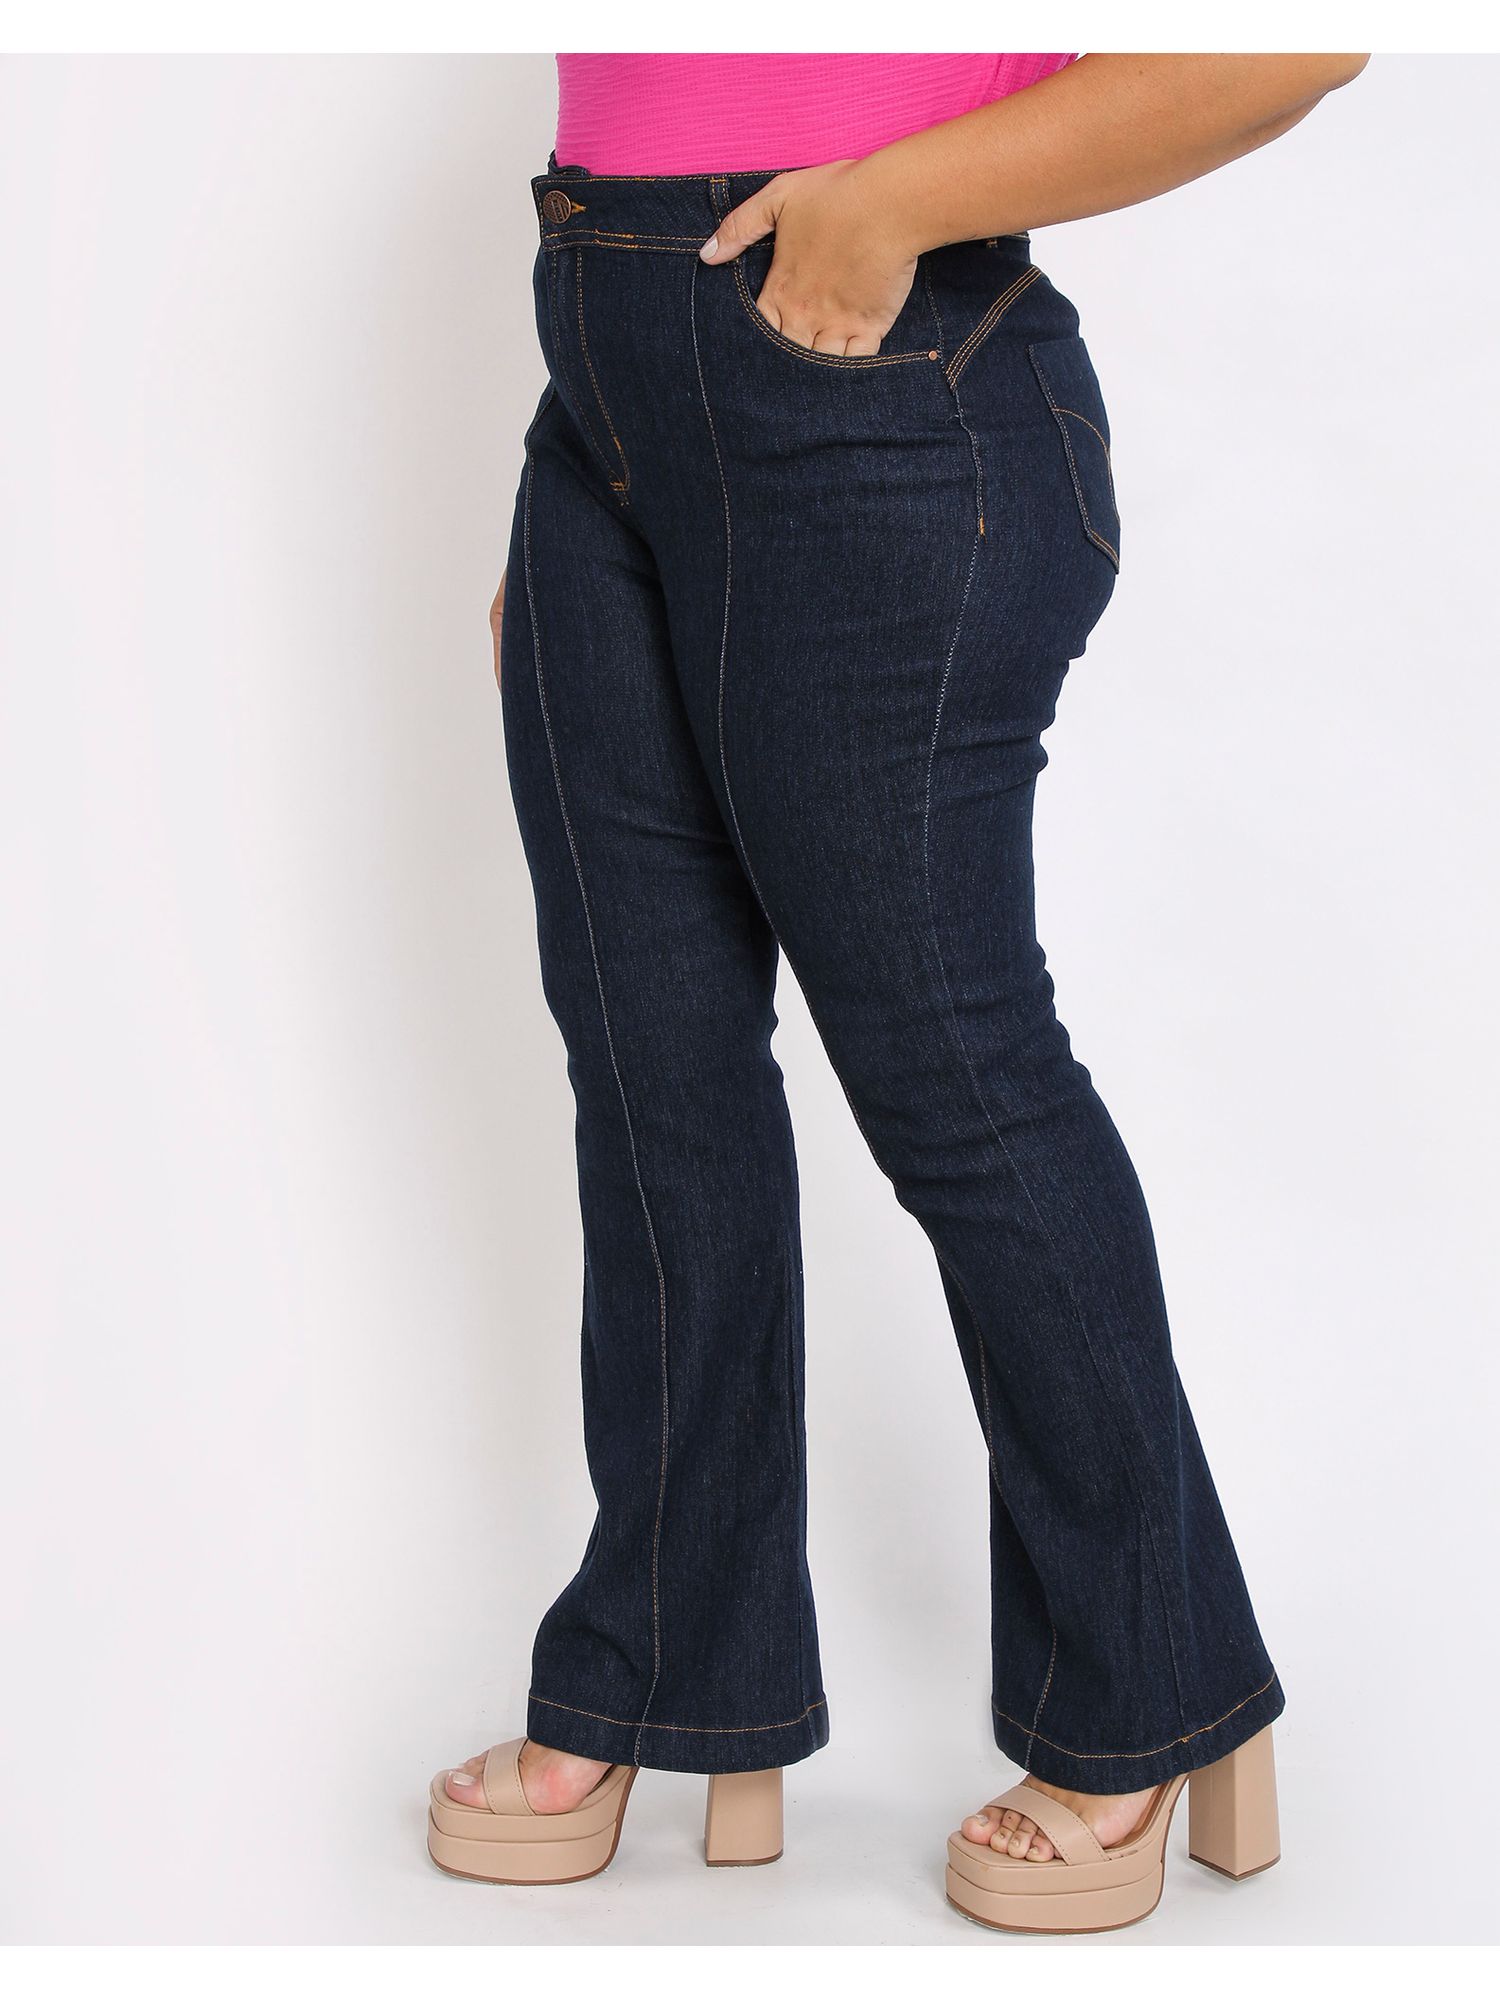 https://lojasbesni.vteximg.com.br/arquivos/ids/593360-1500-2000/505649010-calca-jeans-escura-flare-plus-size-feminino-jeans-amaciado-54-8a9.jpg?v=638361992196700000